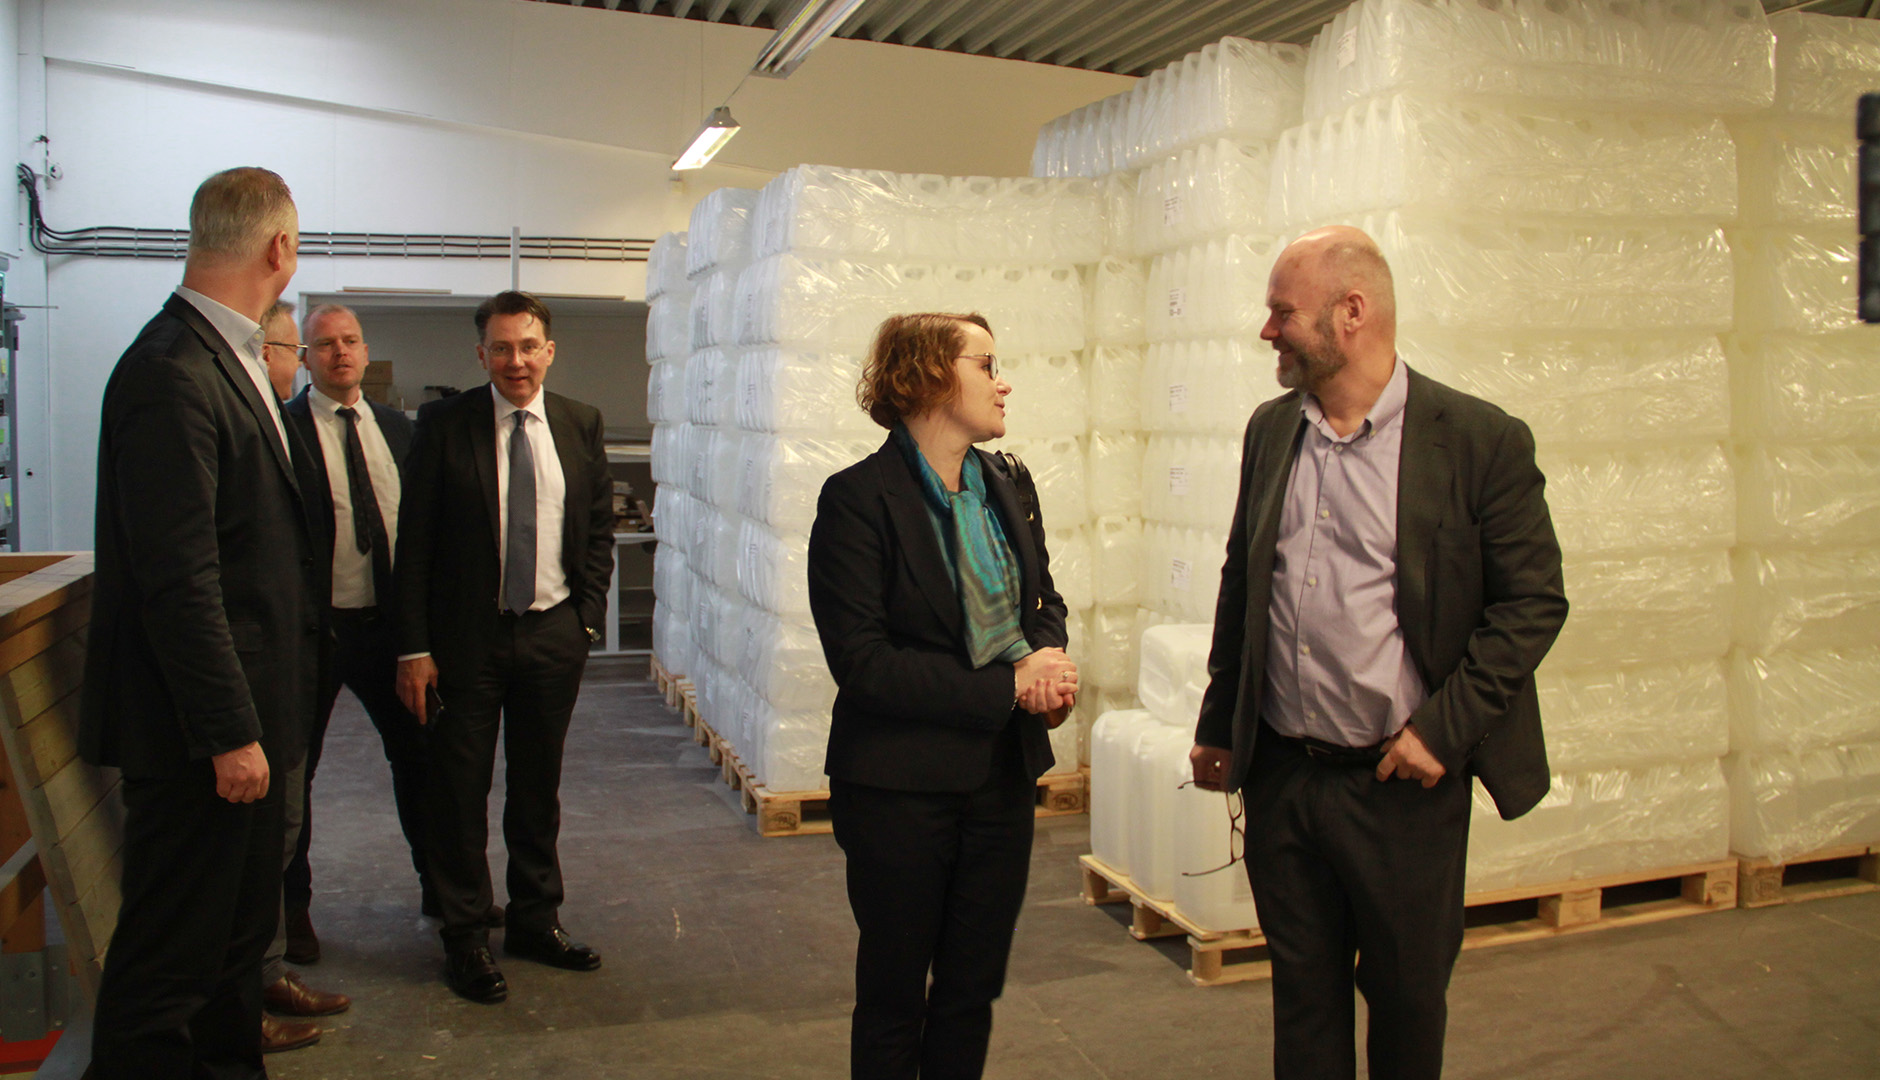 Anna-Karin Jatko, generaldirektör för Exportkreditnämnden, samtalar med Herje Boström när myndigheten besökte SiOO:X nyligen.